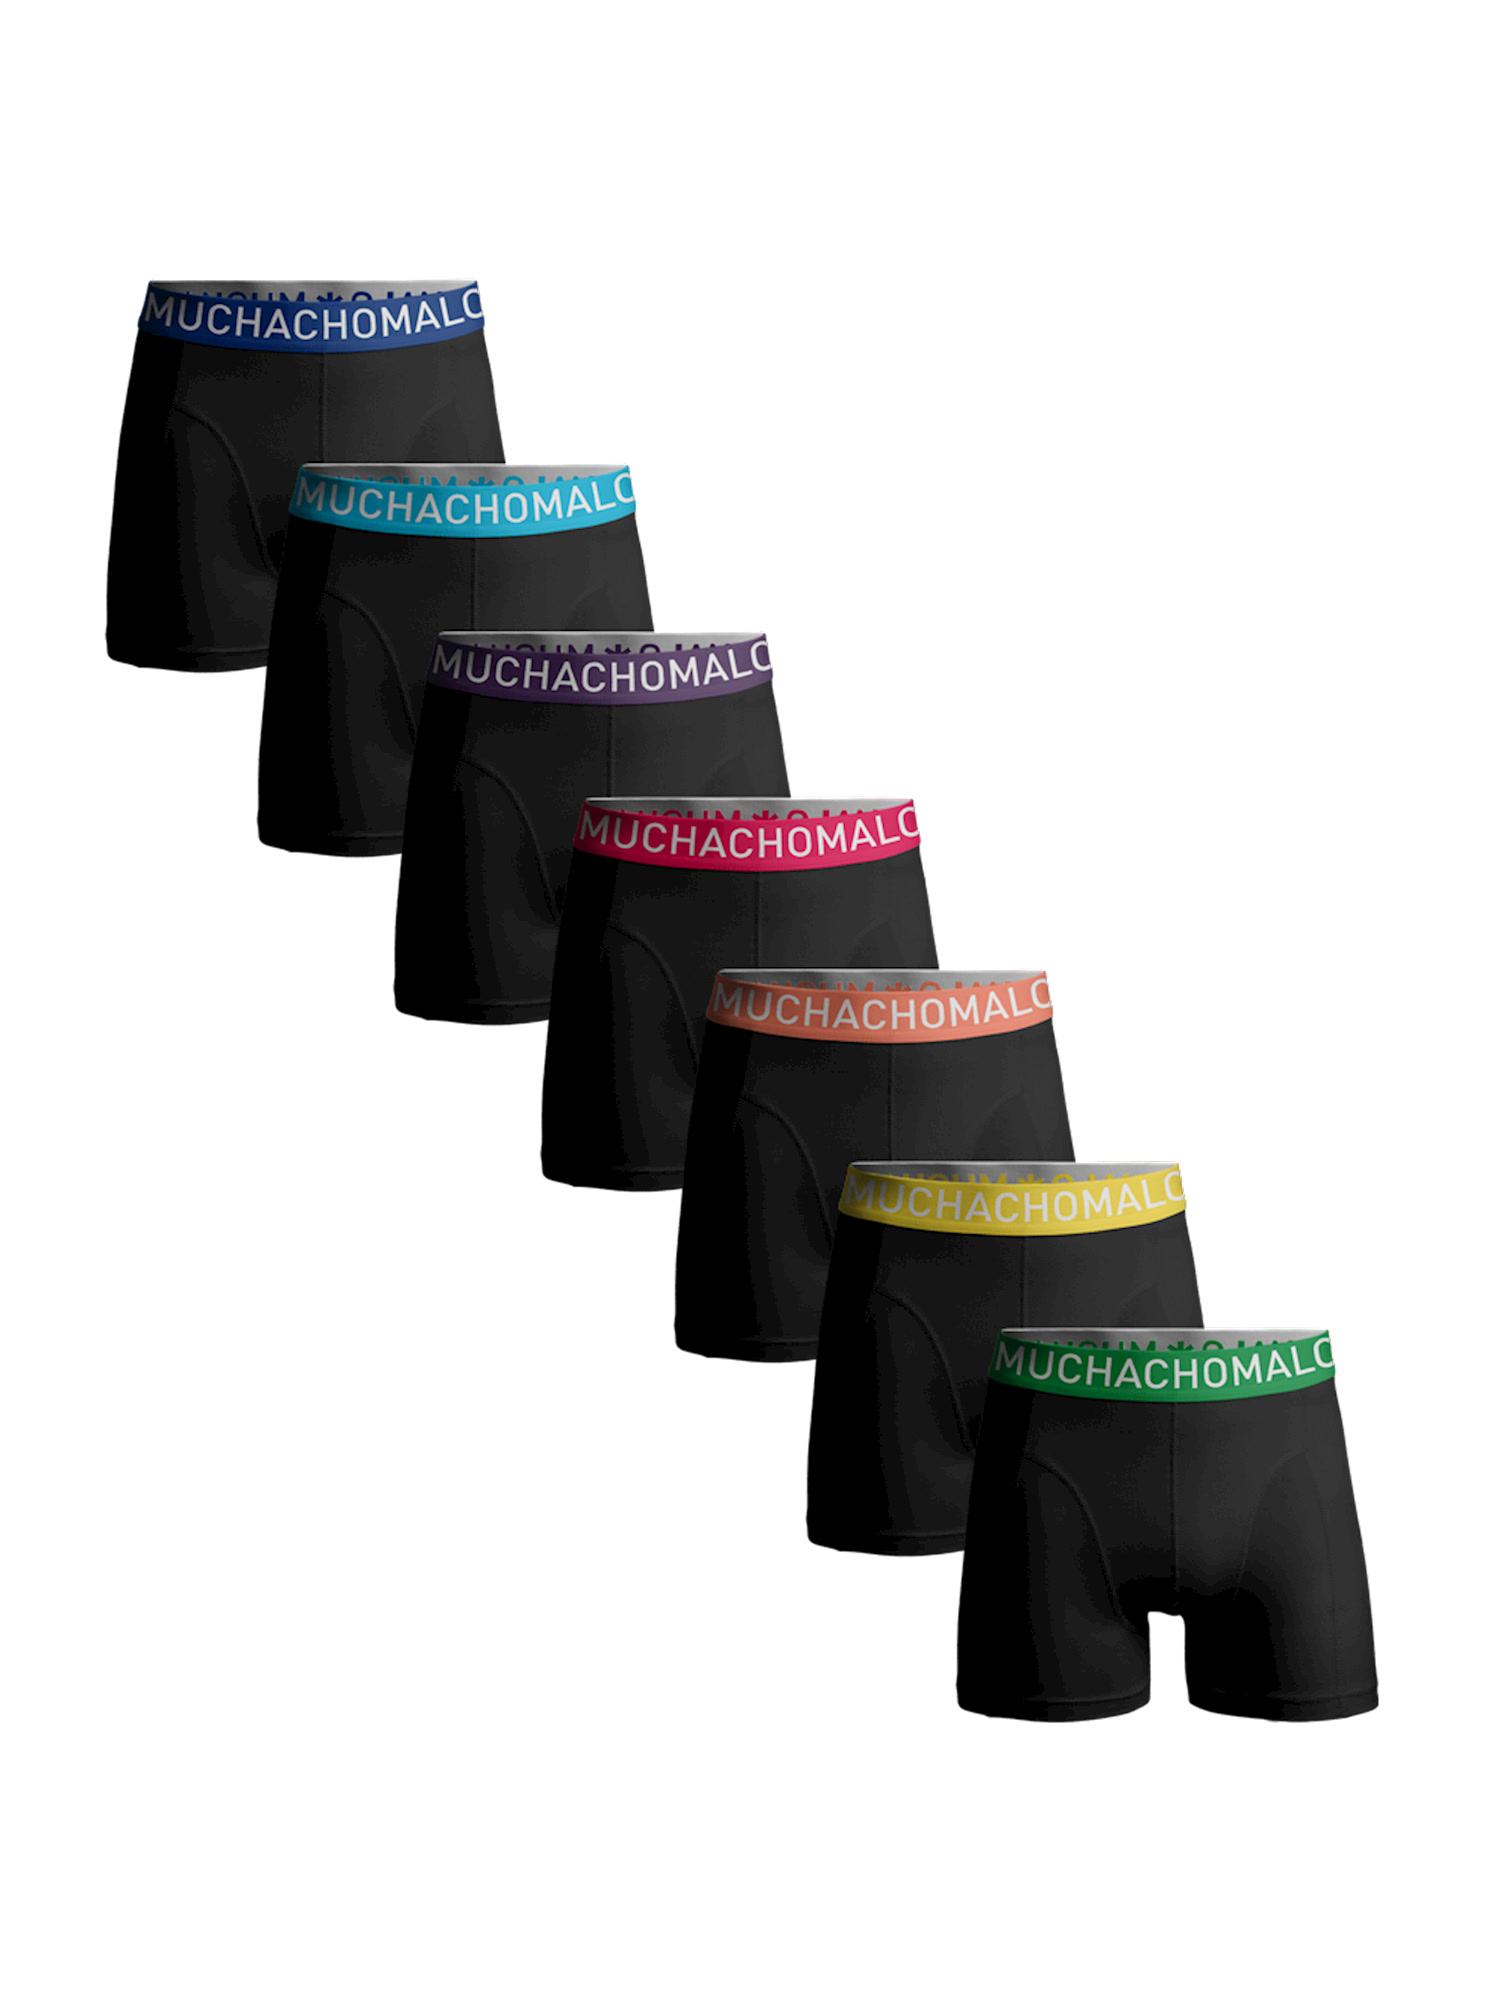 цена Боксеры Muchachomalo 7er-Set: Boxershorts, цвет Black/Black/Black/Black/Black/Black/Black